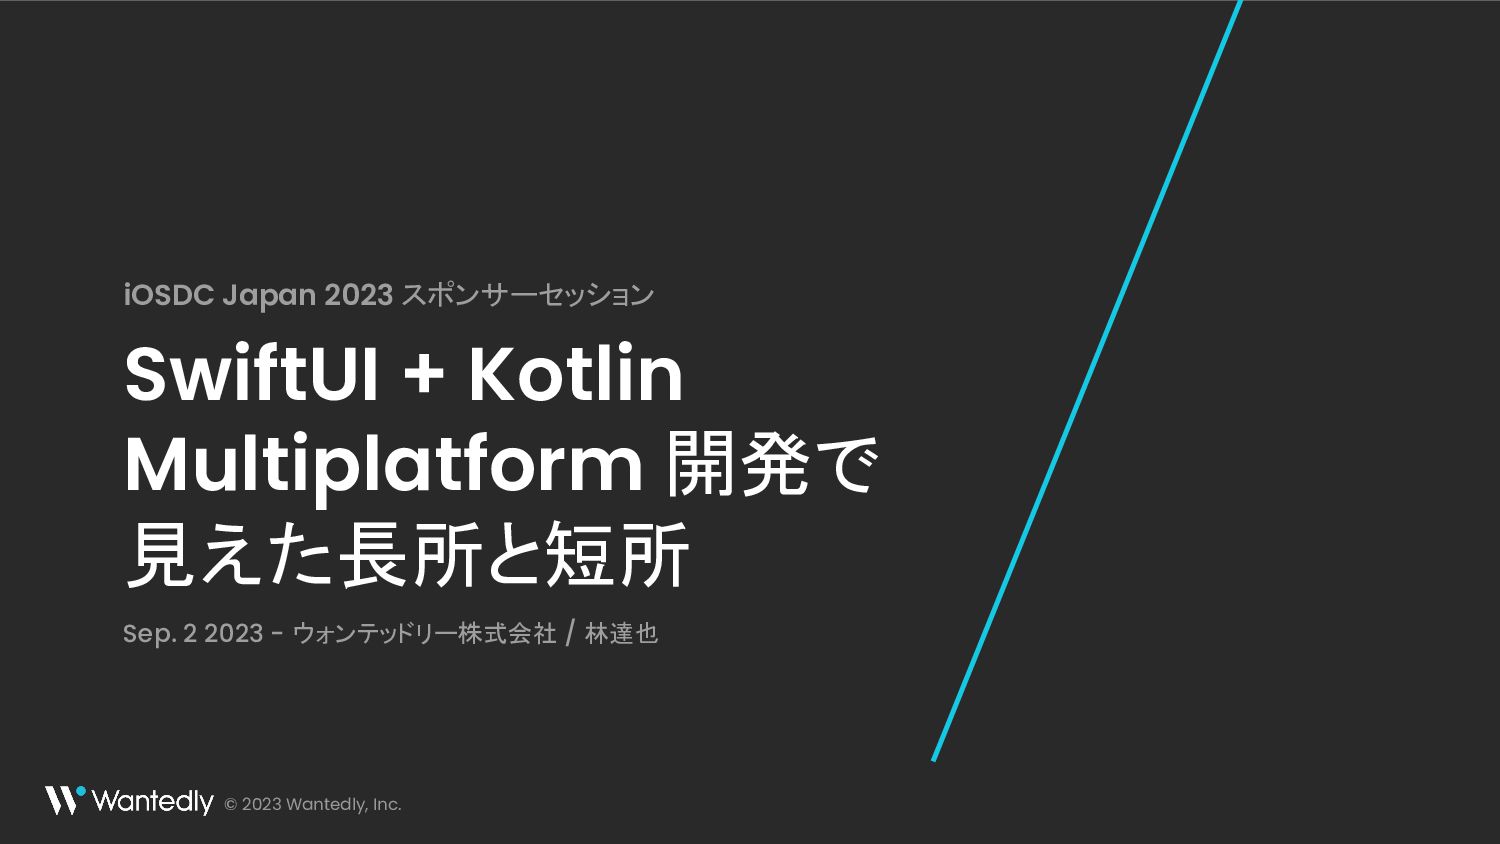 SwiftUI + Kotlin Multiplatform 開発で見えた長所と短所